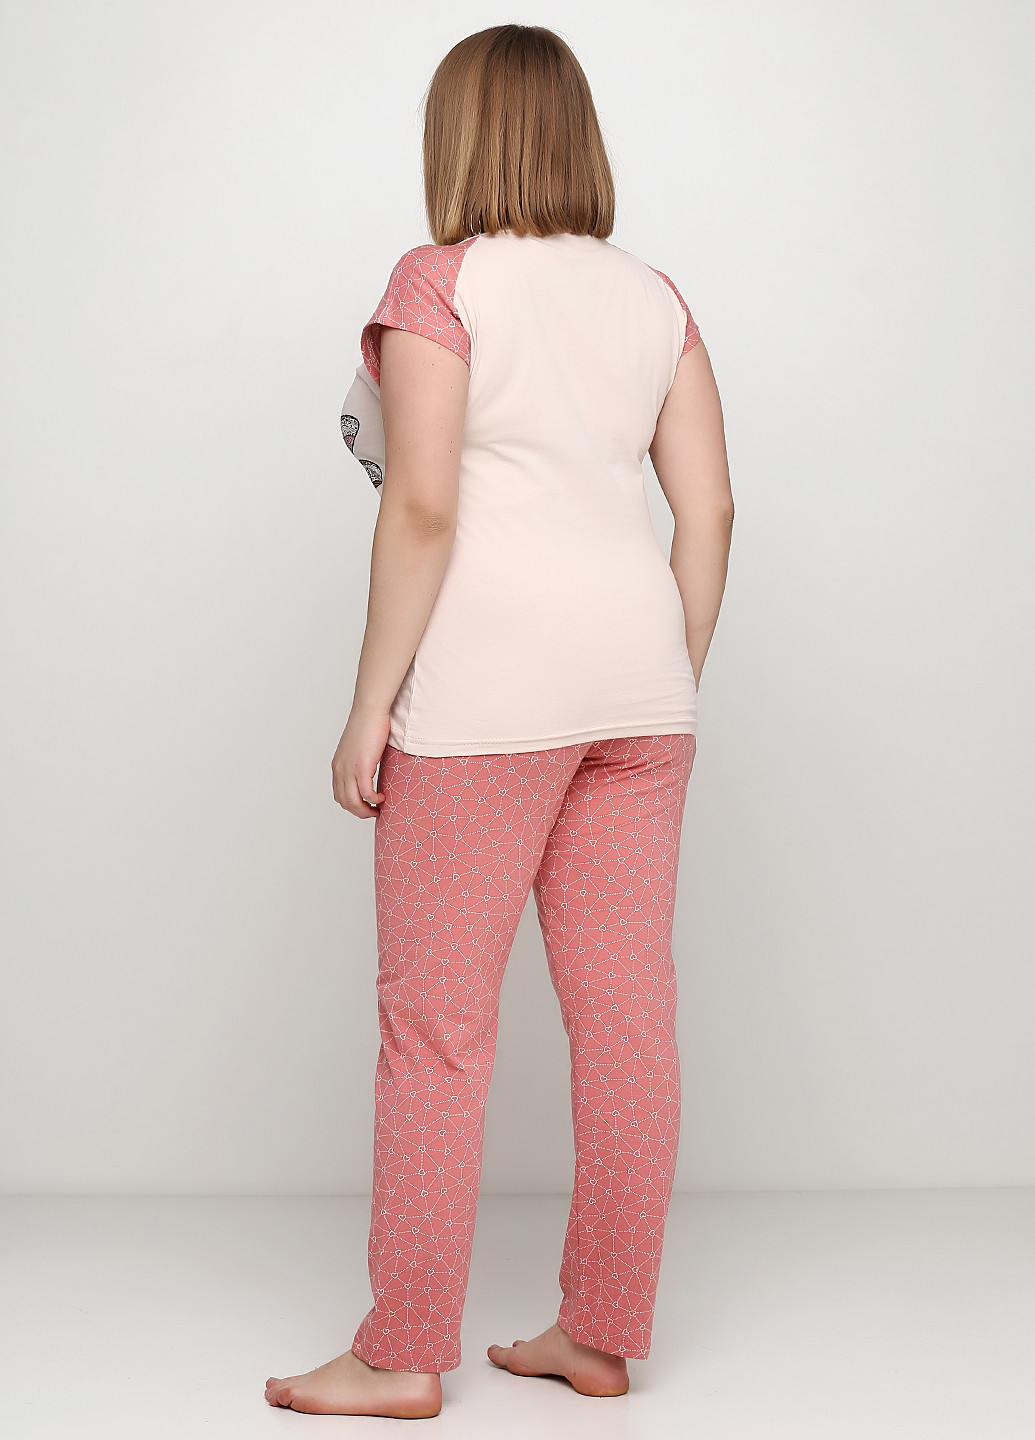 Персиковая всесезон пижама (футболка, брюки) футболка + брюки Sexen